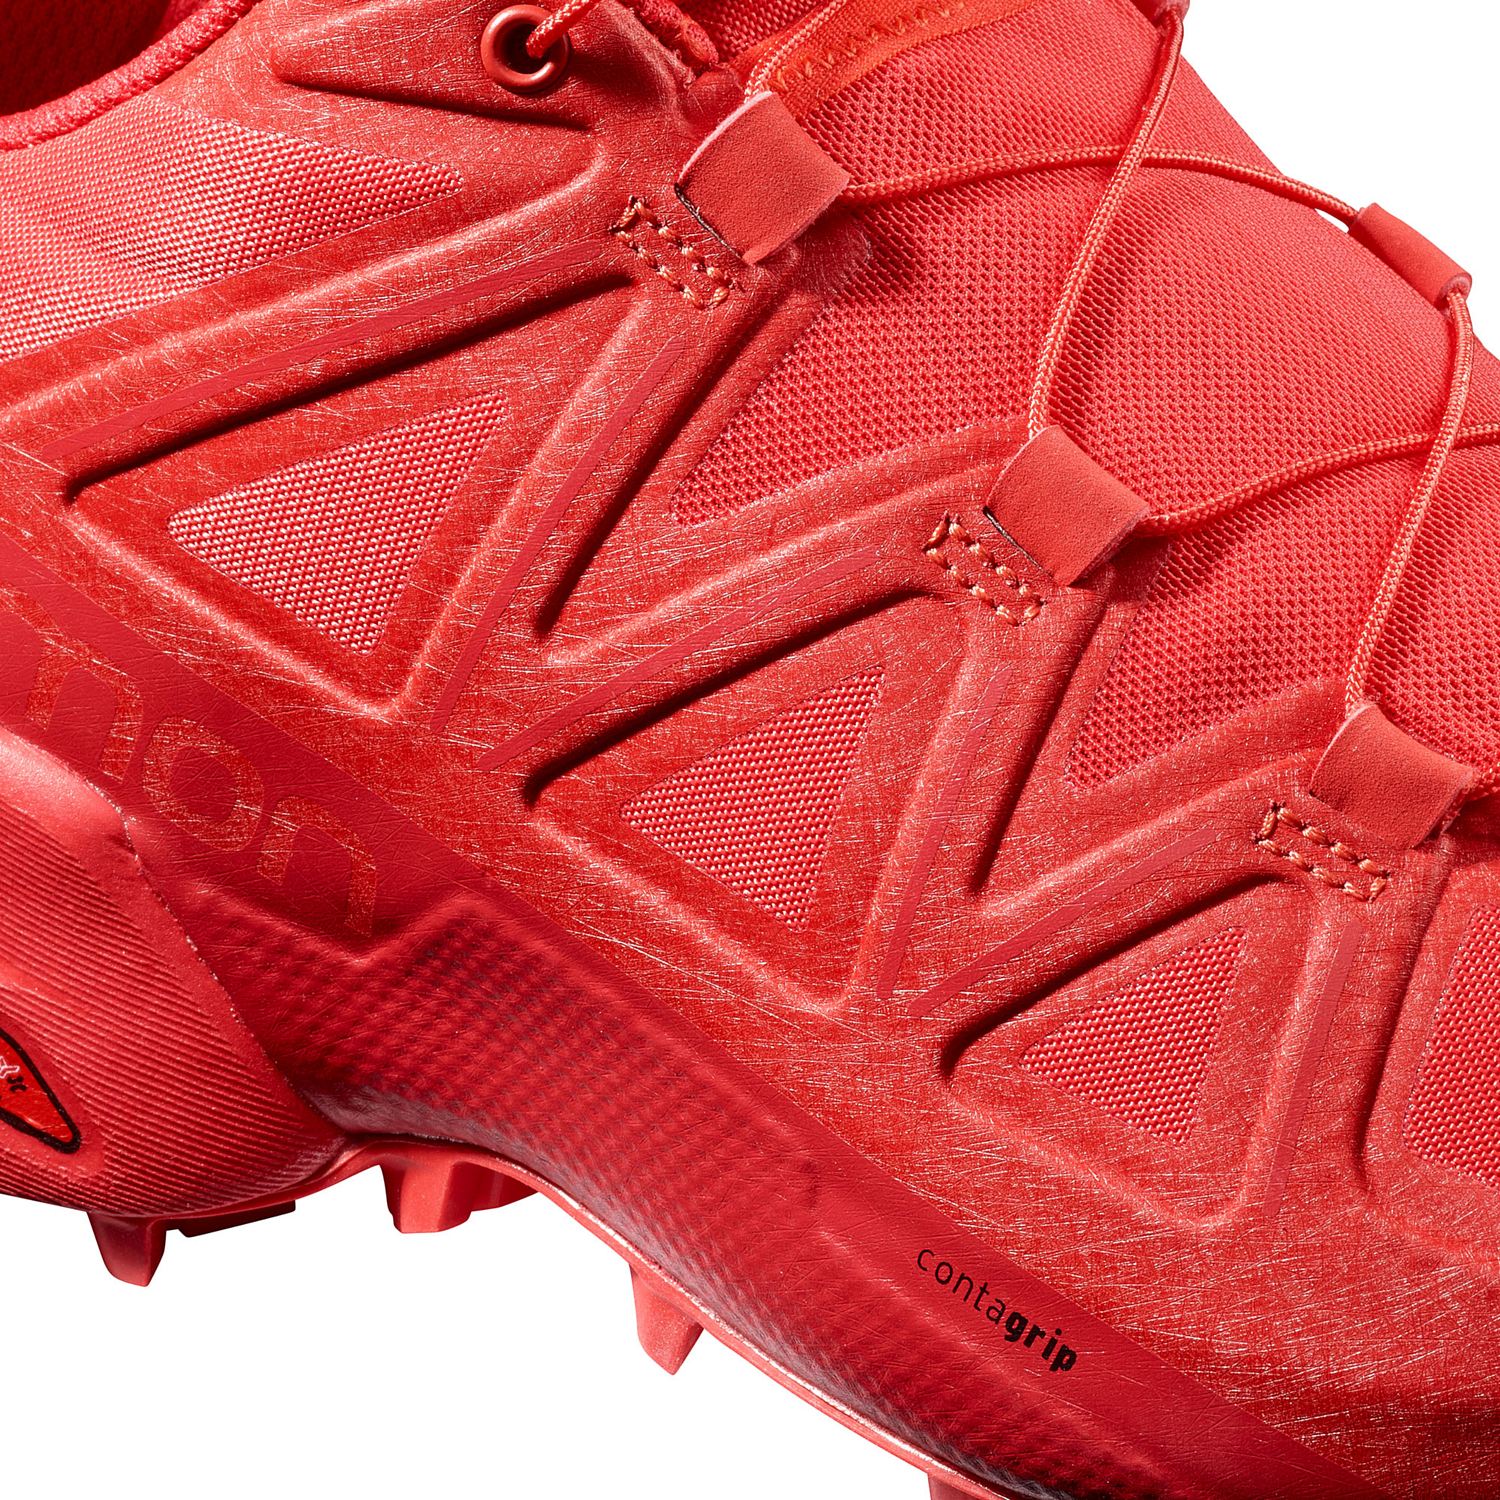 Беговые кроссовки для XC Salomon 2019 Speedcross 5 W High Risk Red/Barbados/Barbados